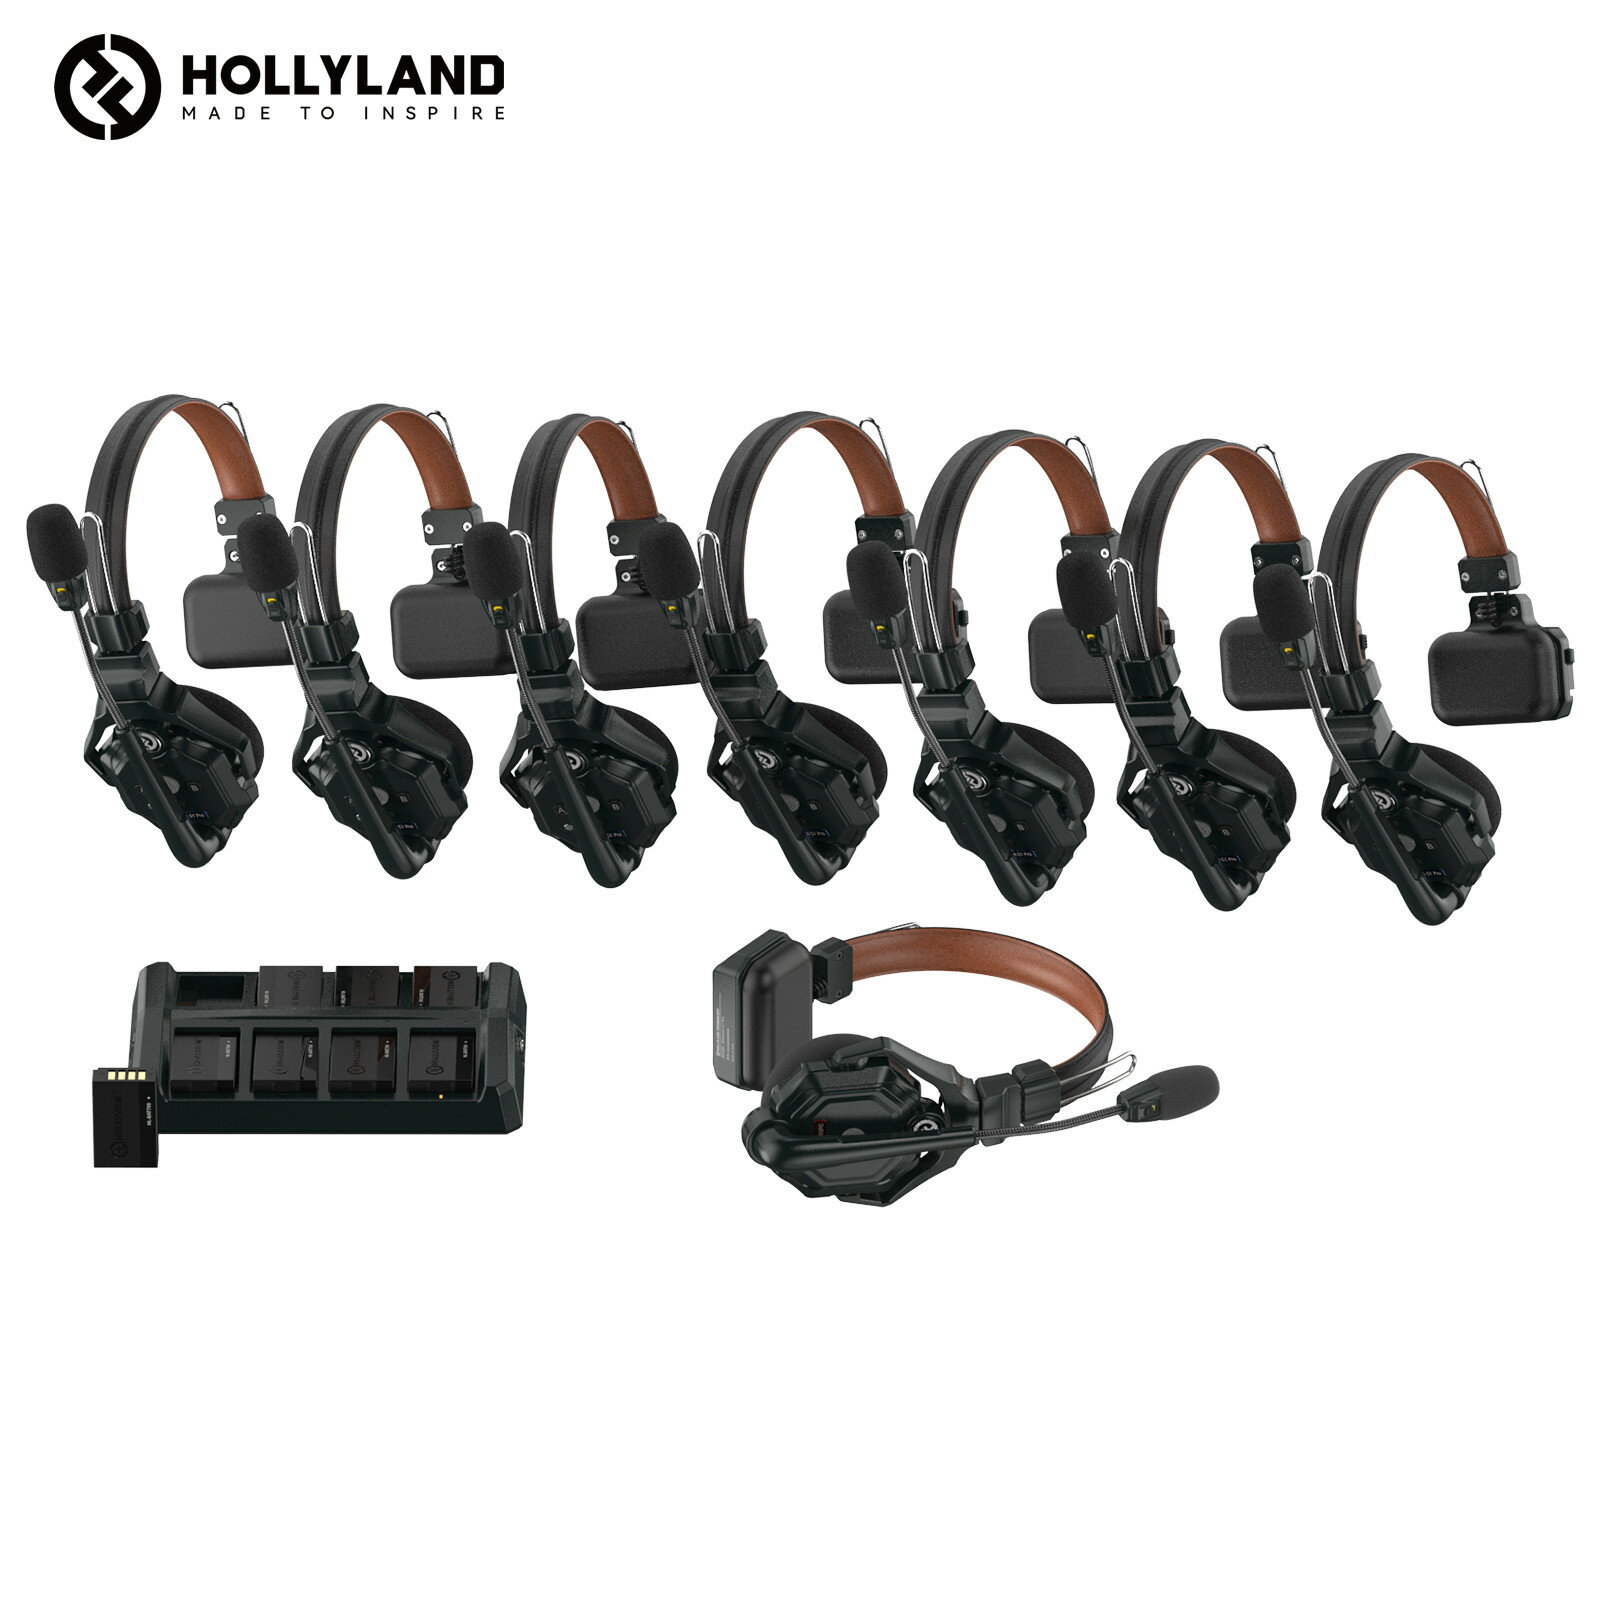 【特典付き】Hollyland Solidcom C1 Pro-8S ワイヤレスインカム 8台セット ノイズ キャンセリング・PTT・ミュート機能付き 全二重 通話範囲350m 親機x1子機x7 子機も増設可能 小型軽量ヘッドセット 設定不要 箱から出してすぐに使える同時通話システム